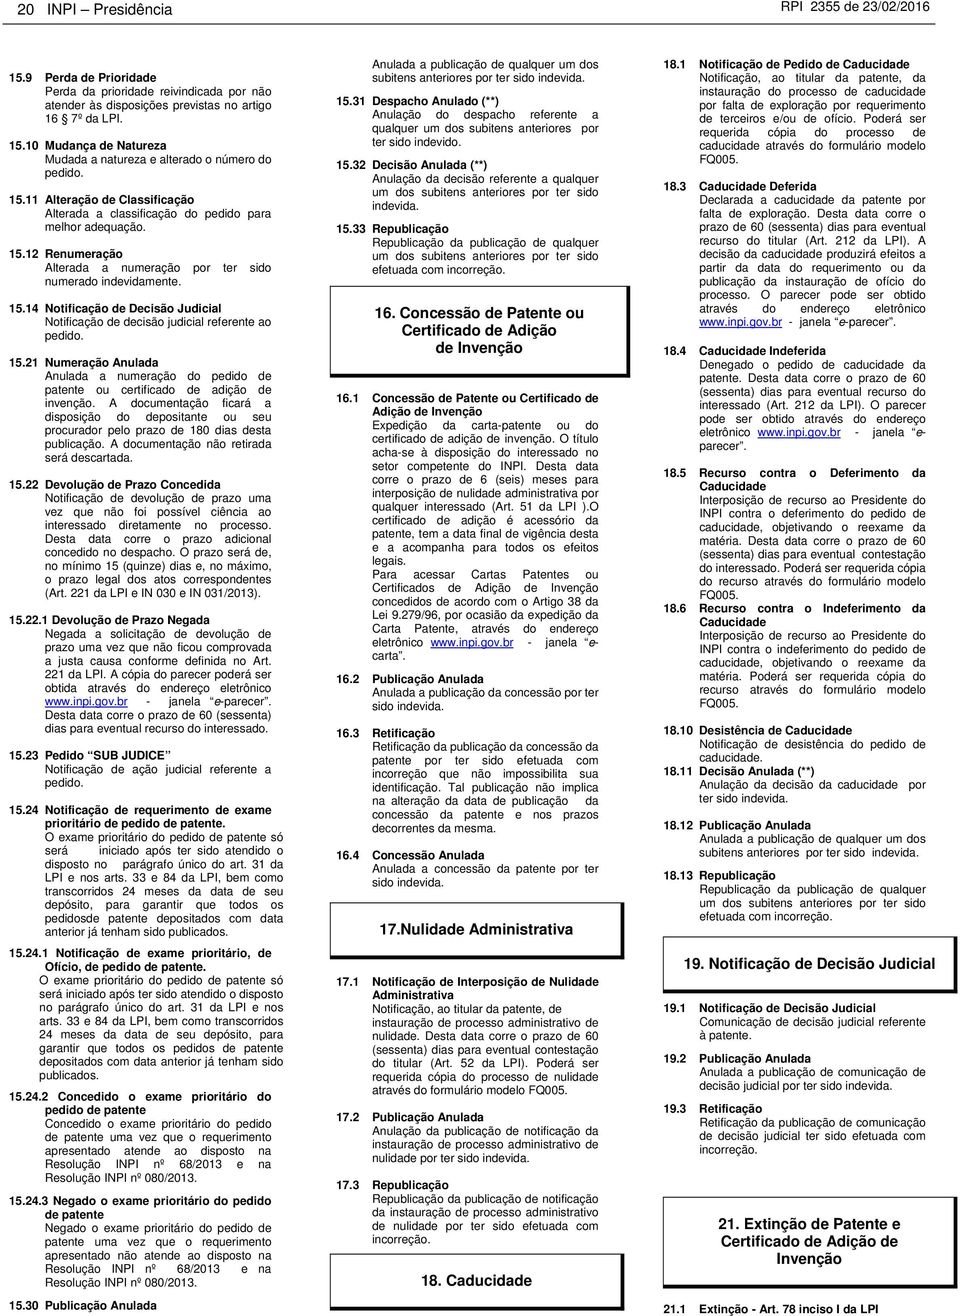 15.21 Numeração Anulada Anulada a numeração do pedido de patente ou certificado de adição de invenção.